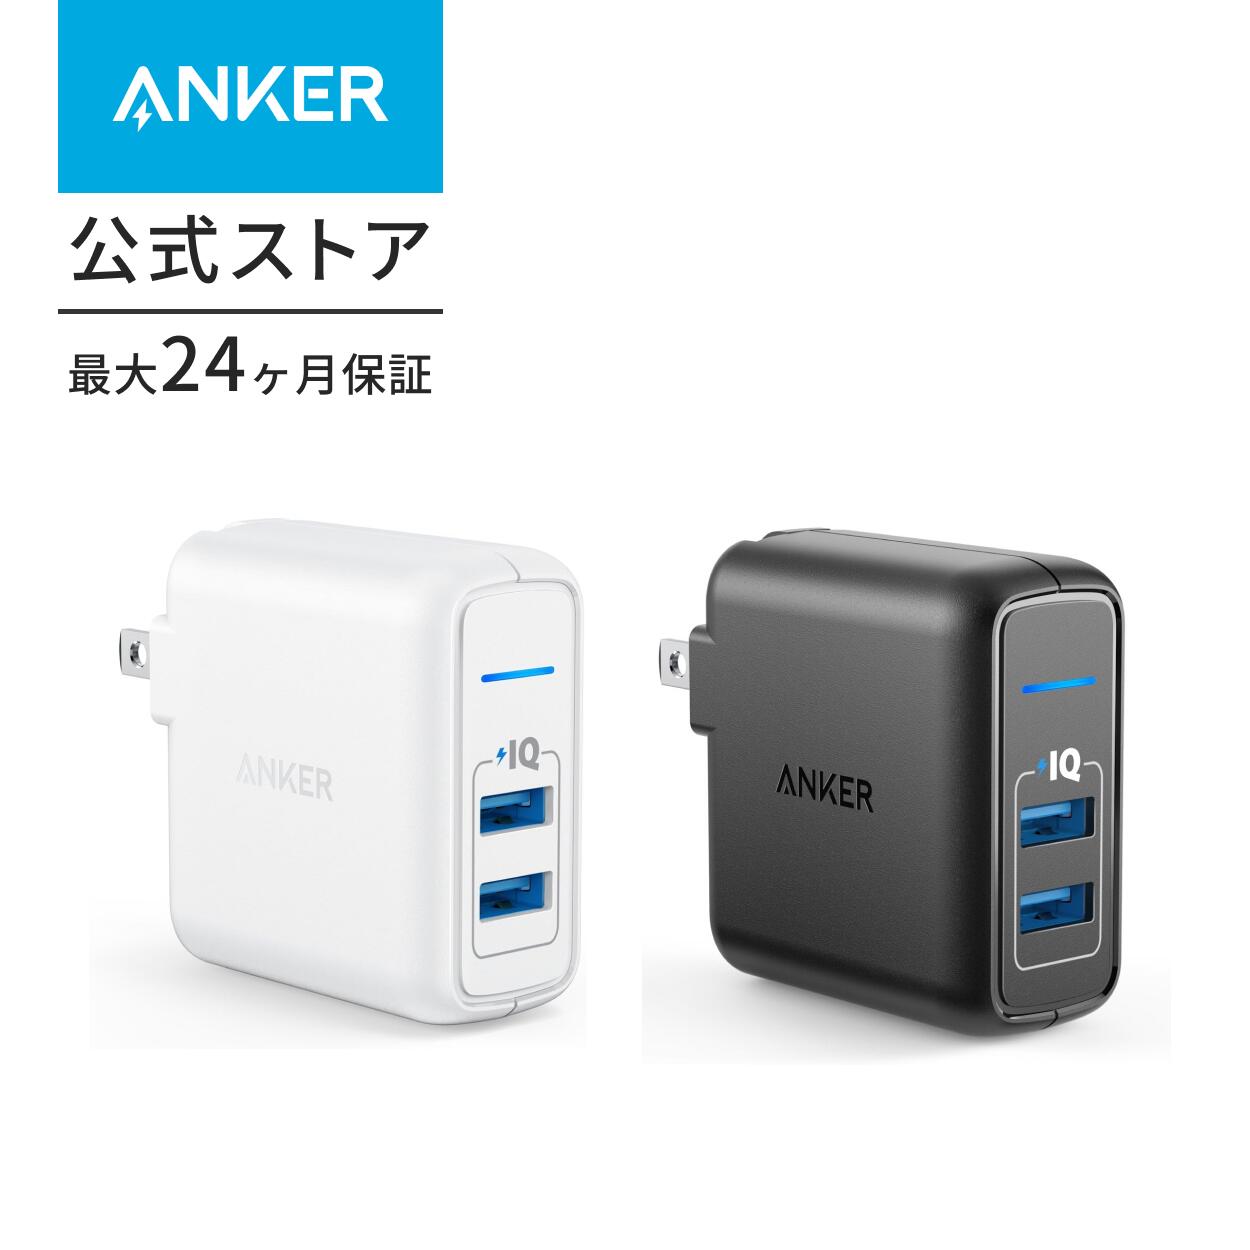 【最大900円OFF 5/16まで】【一部あす楽対応】Anker PowerPort 2 Elite (24W 2ポート USB充電器)【PSE認証済/PowerIQ搭載/折りたたみ式プラグ搭載】 iPhone/iPad/Galaxy S9 / Xperia XZ1,その他Android各種対応